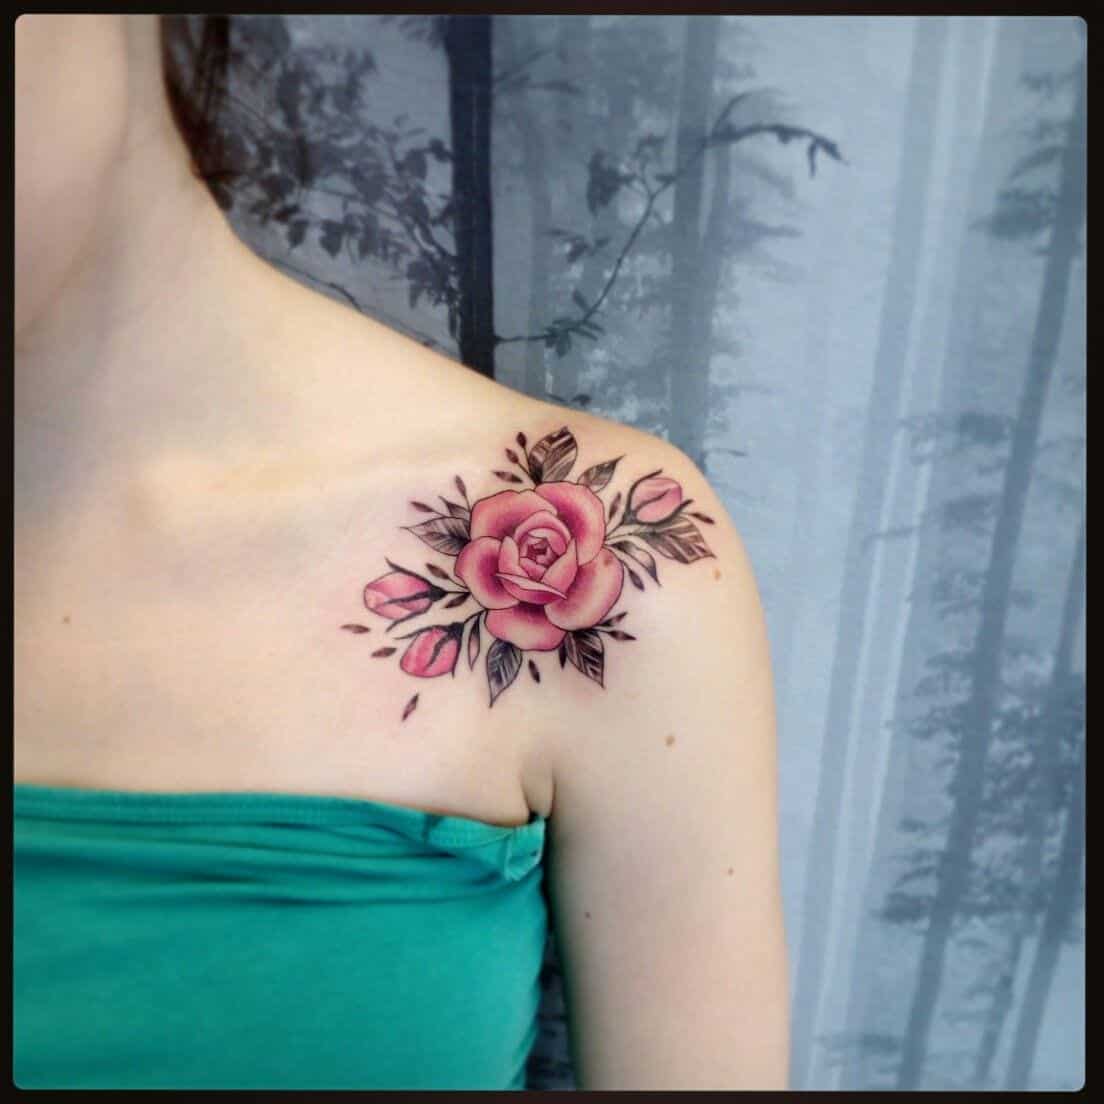 Tatuagem no ombro - 50 ideias para você se inspirar